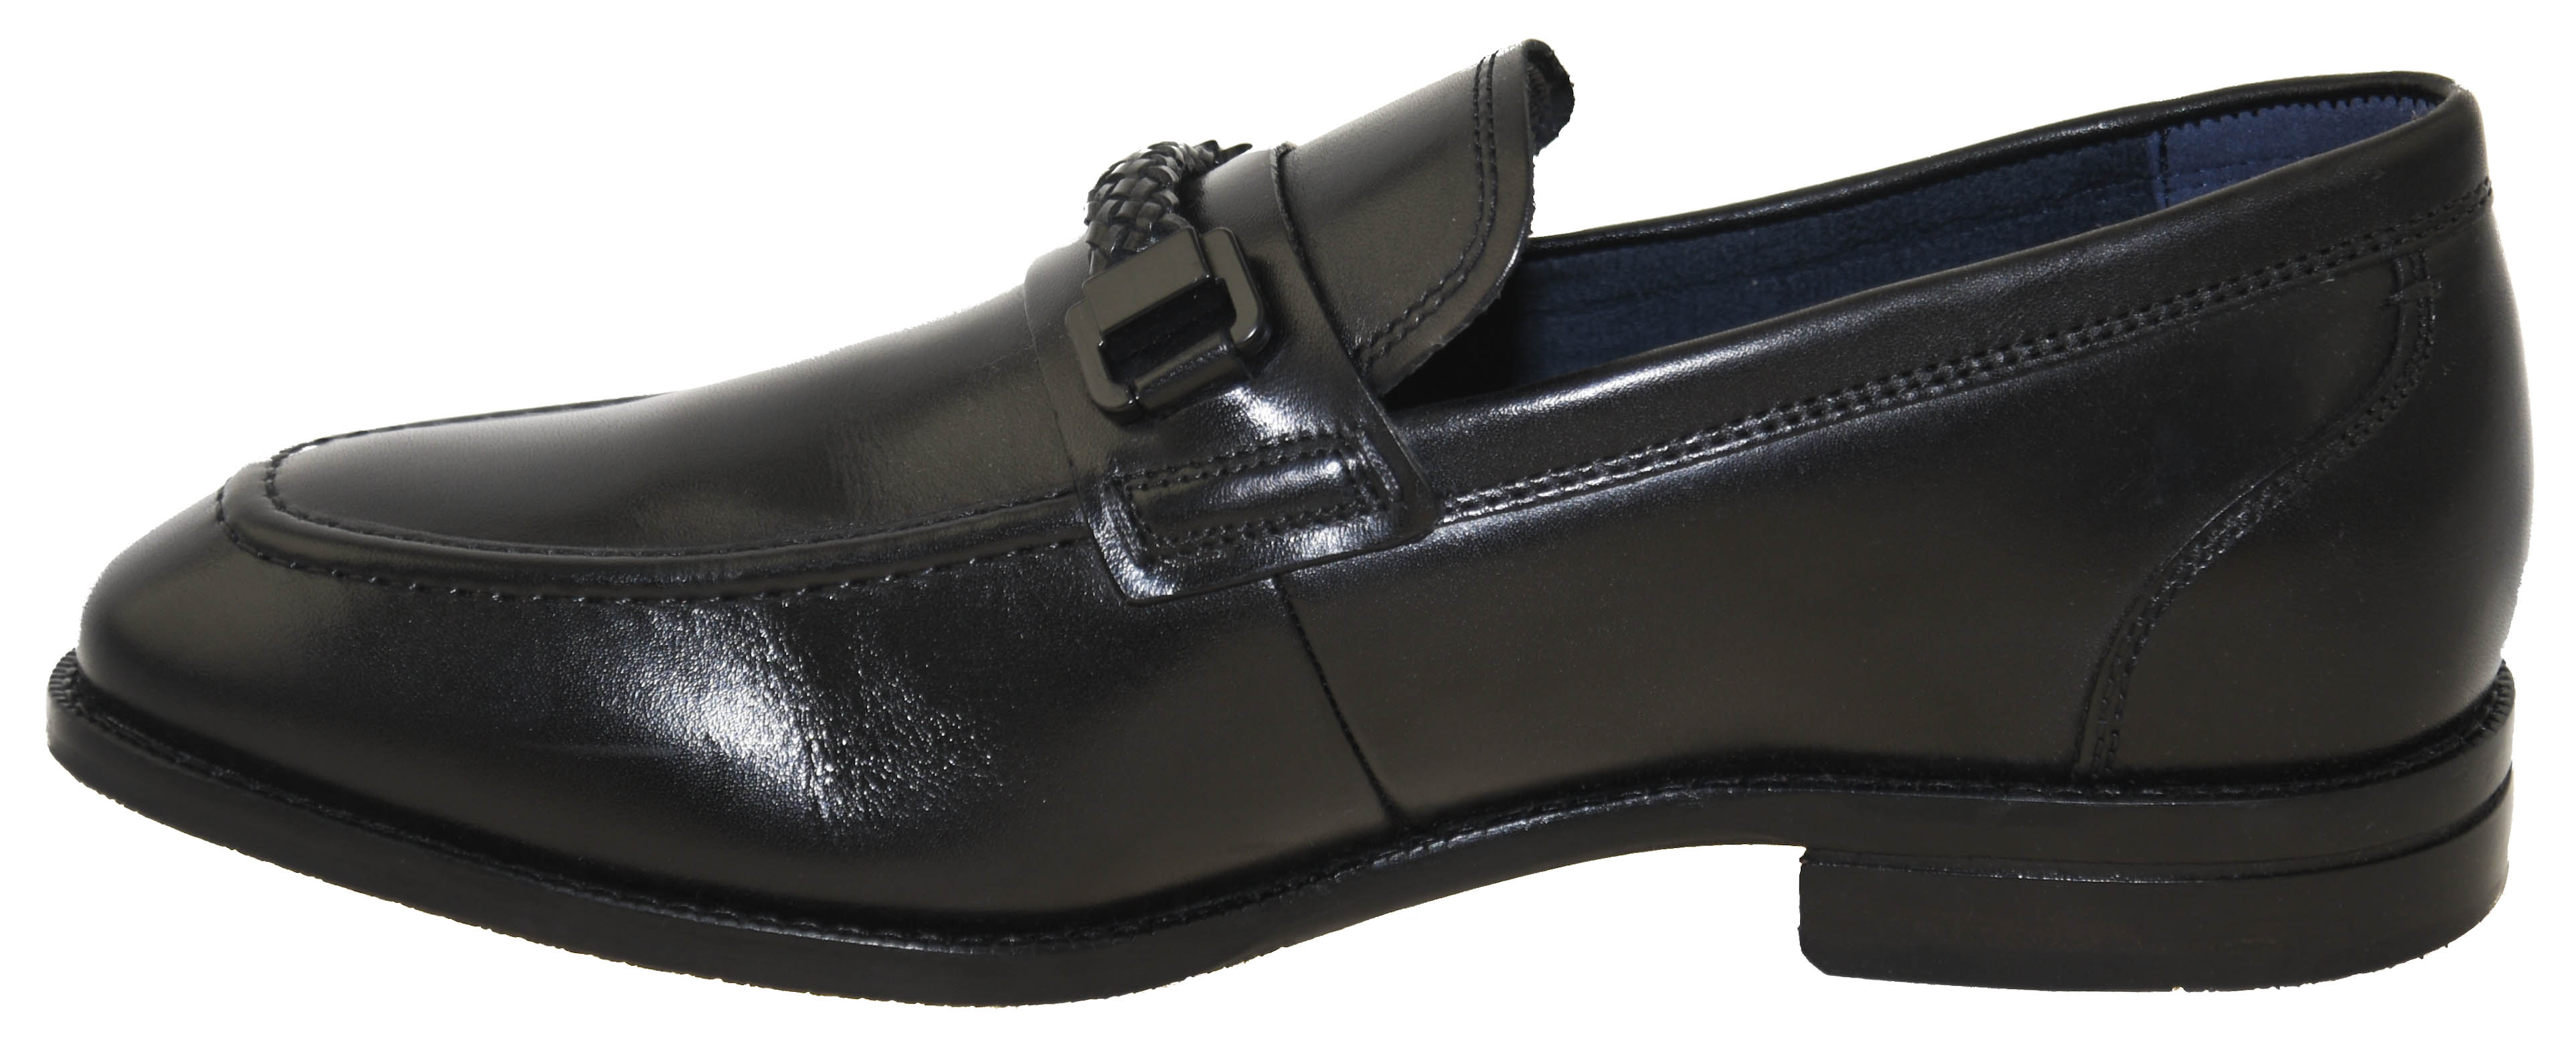 Cole Haan Men's Warner Grand Bit Loafer Black Style C29041 | eBay